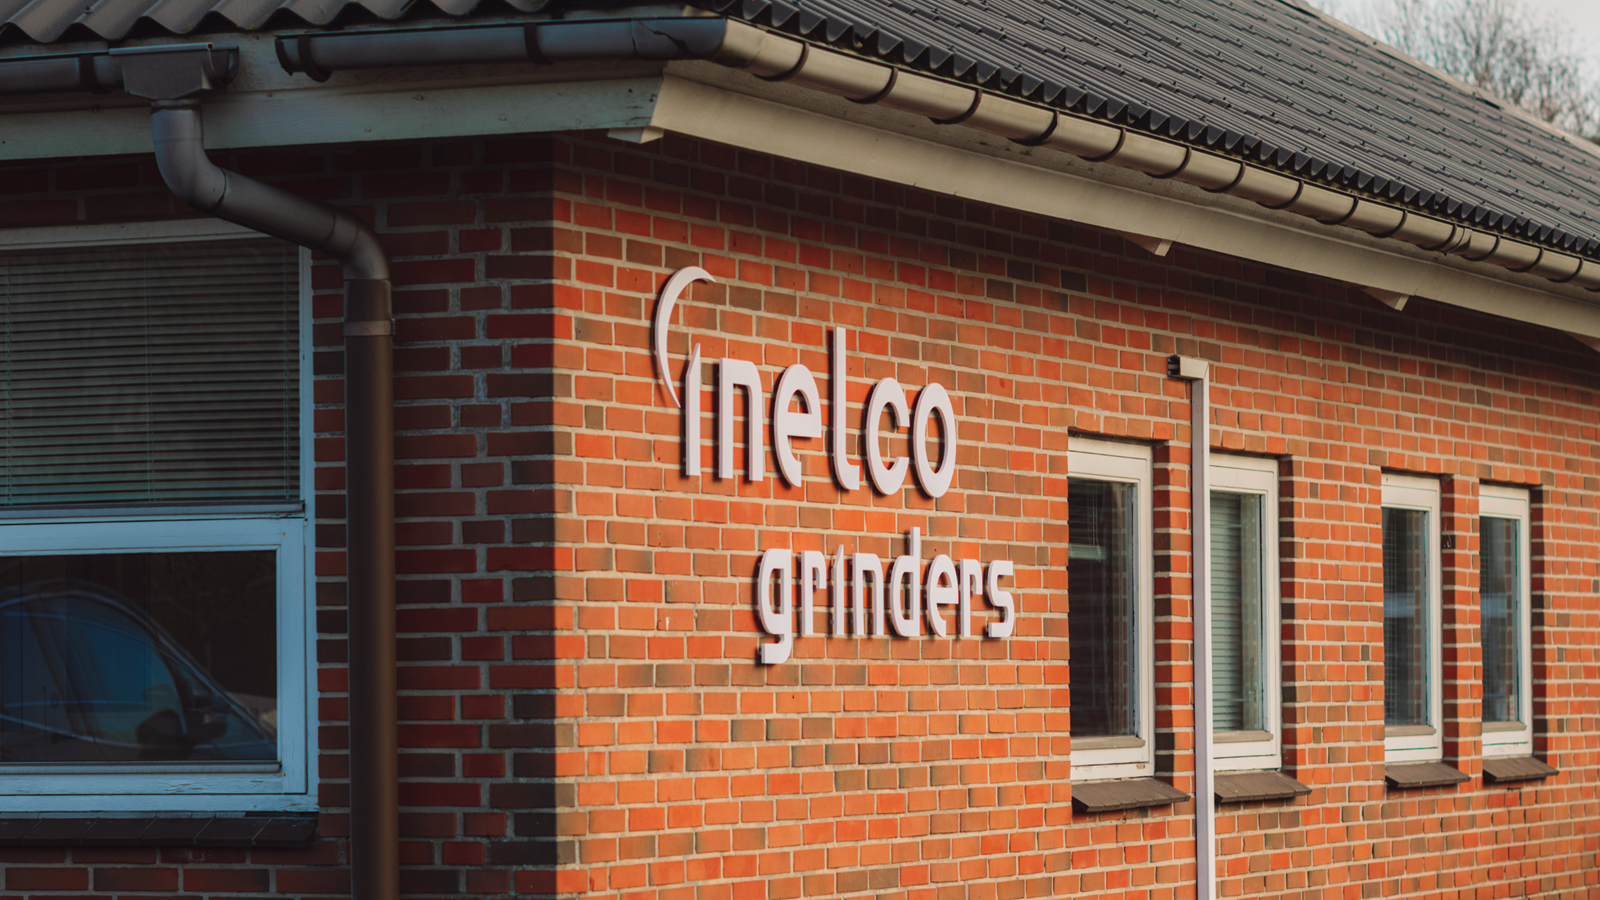 Inelco Grinders bygning med logo